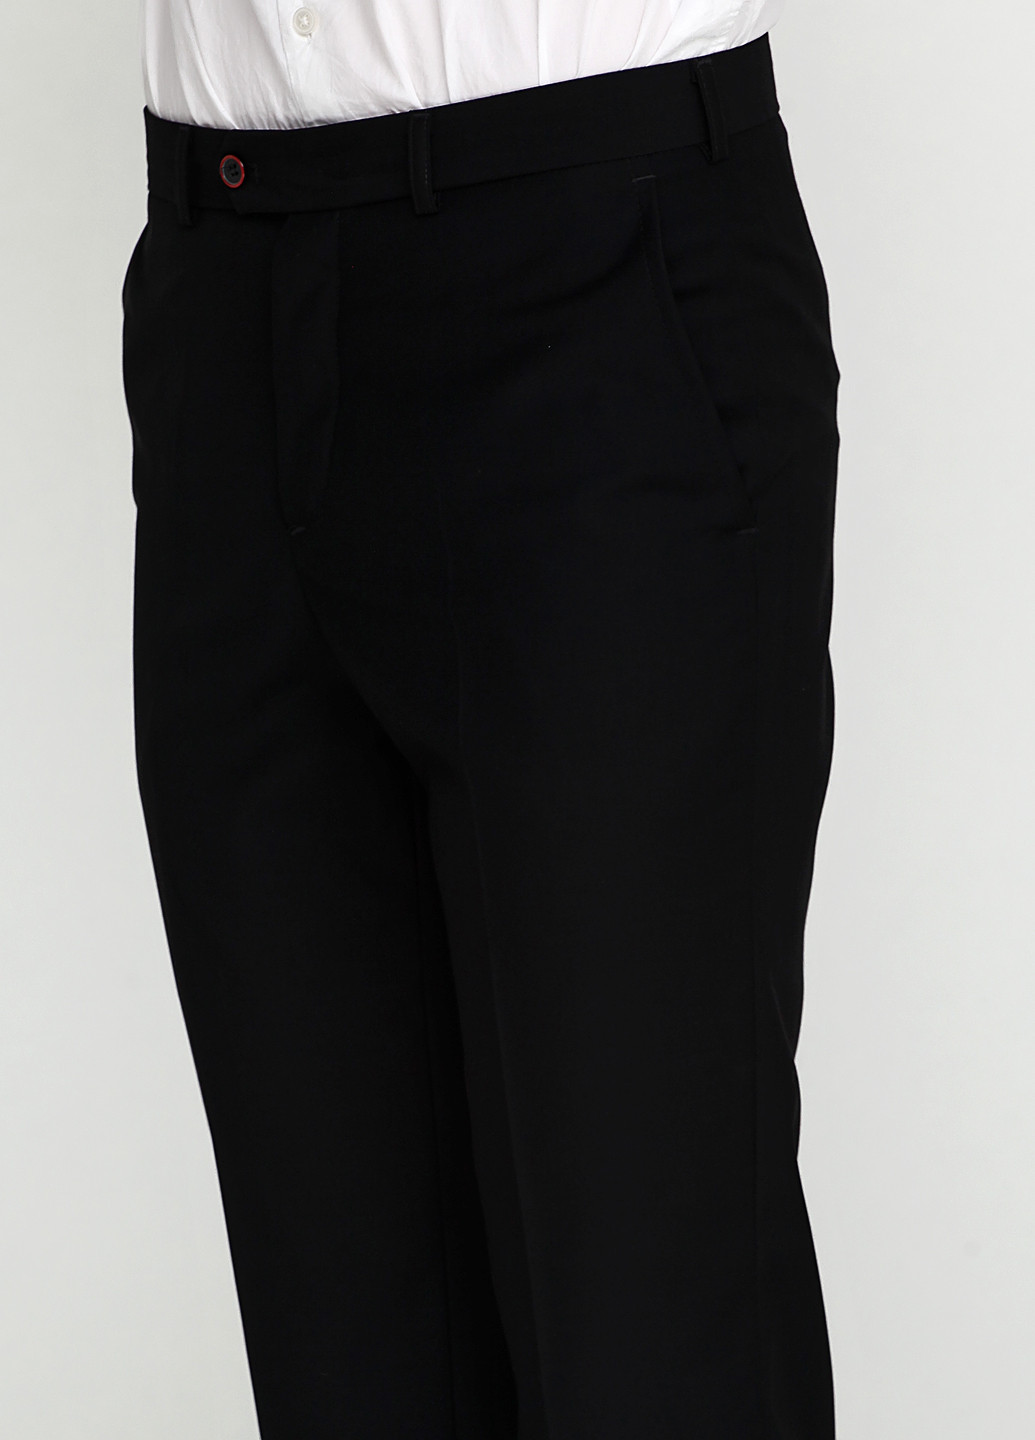 Черный демисезонный костюм (пиджак, брюки) брючный Миа-Стиль